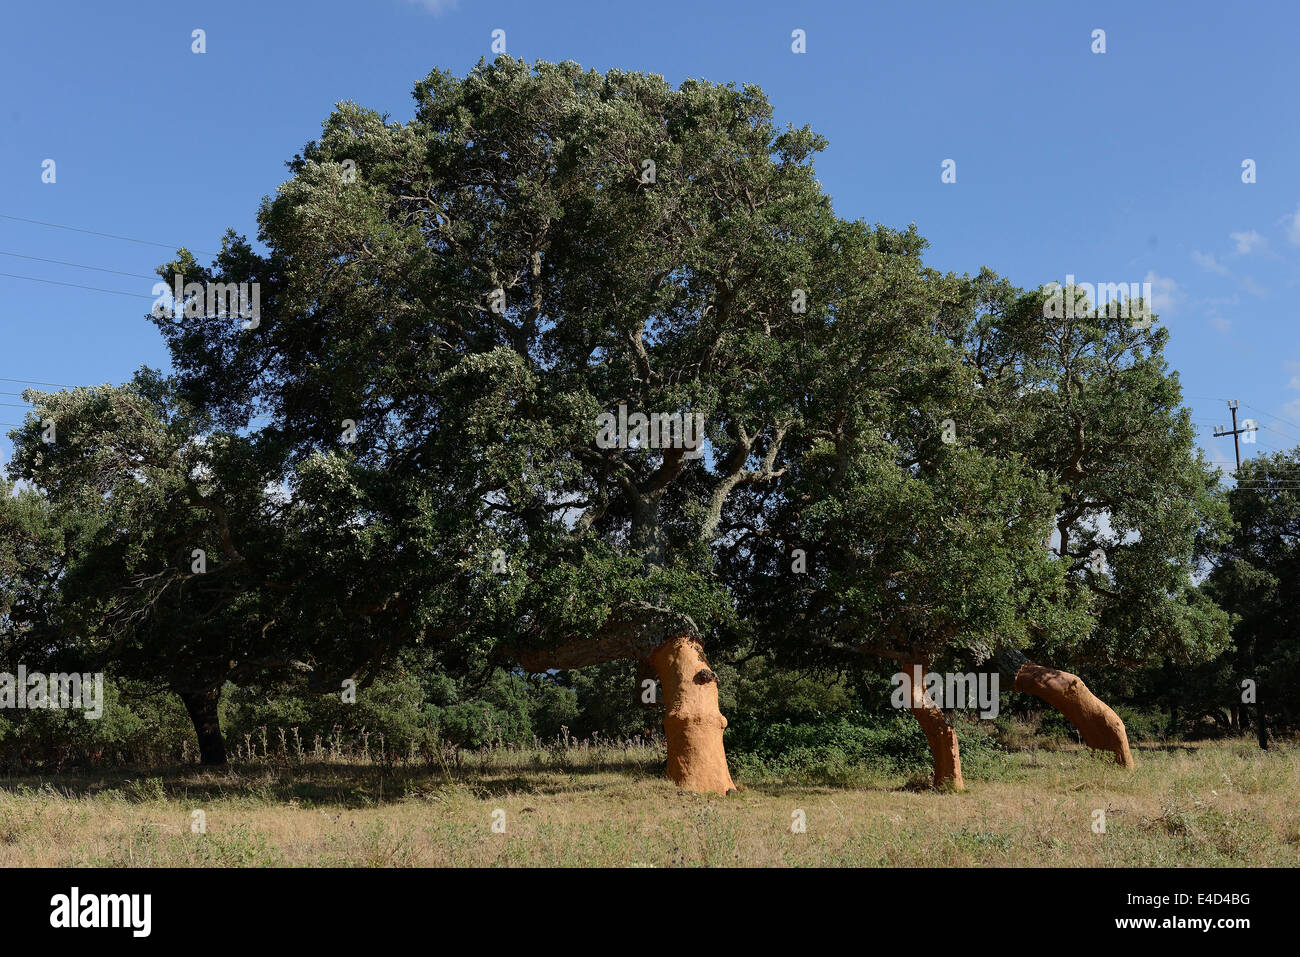 Appena sbucciata querce da sughero (Quercus suber), Aglientu, Sardegna, Italia Foto Stock